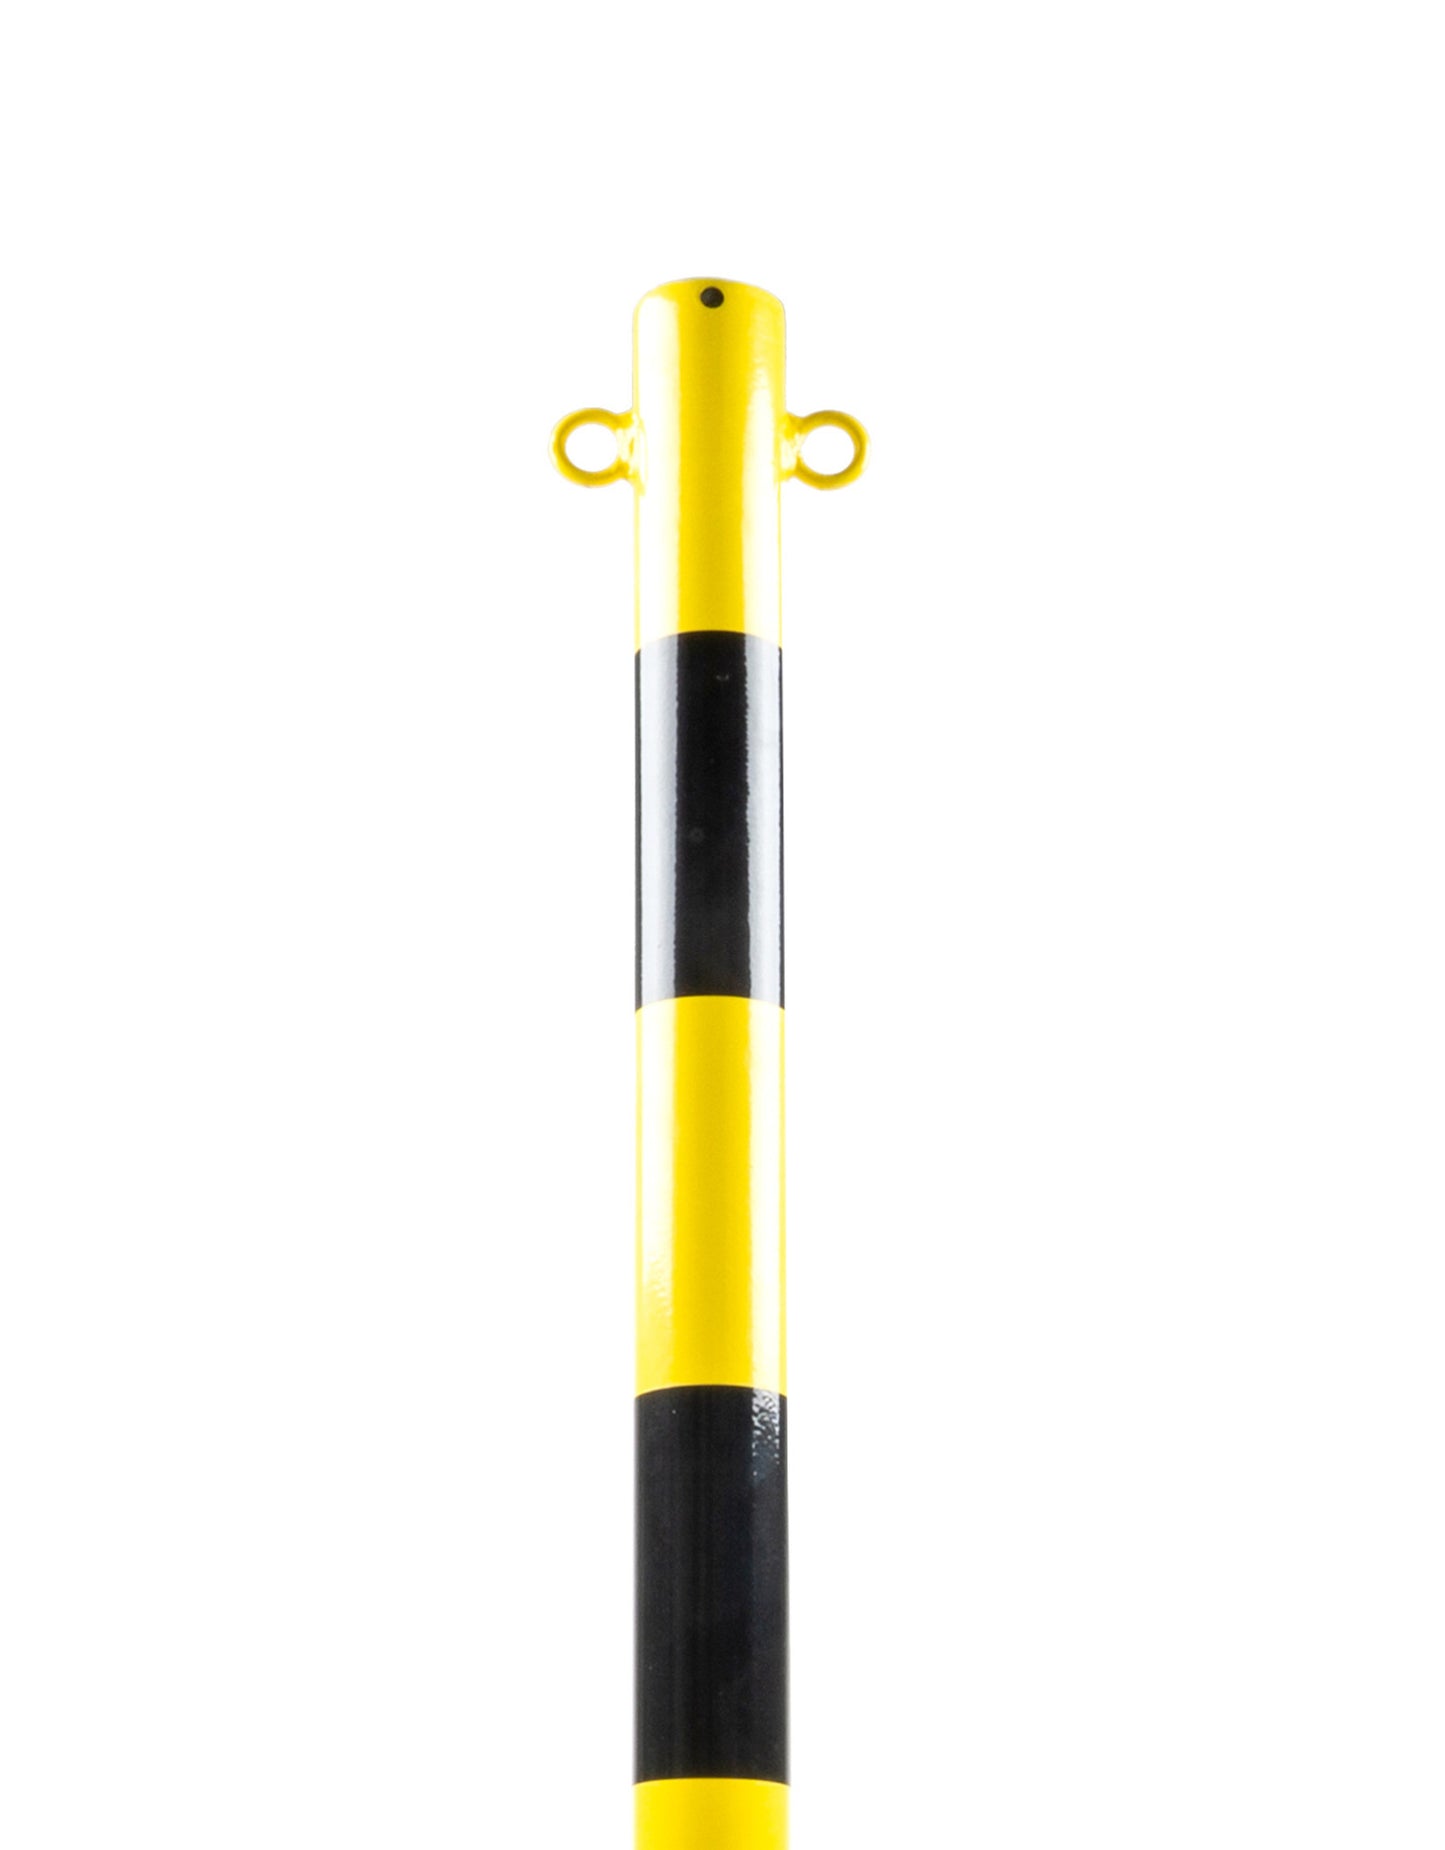 Poteau de signalisation métallique, avec base 15 kg, jaune / noir